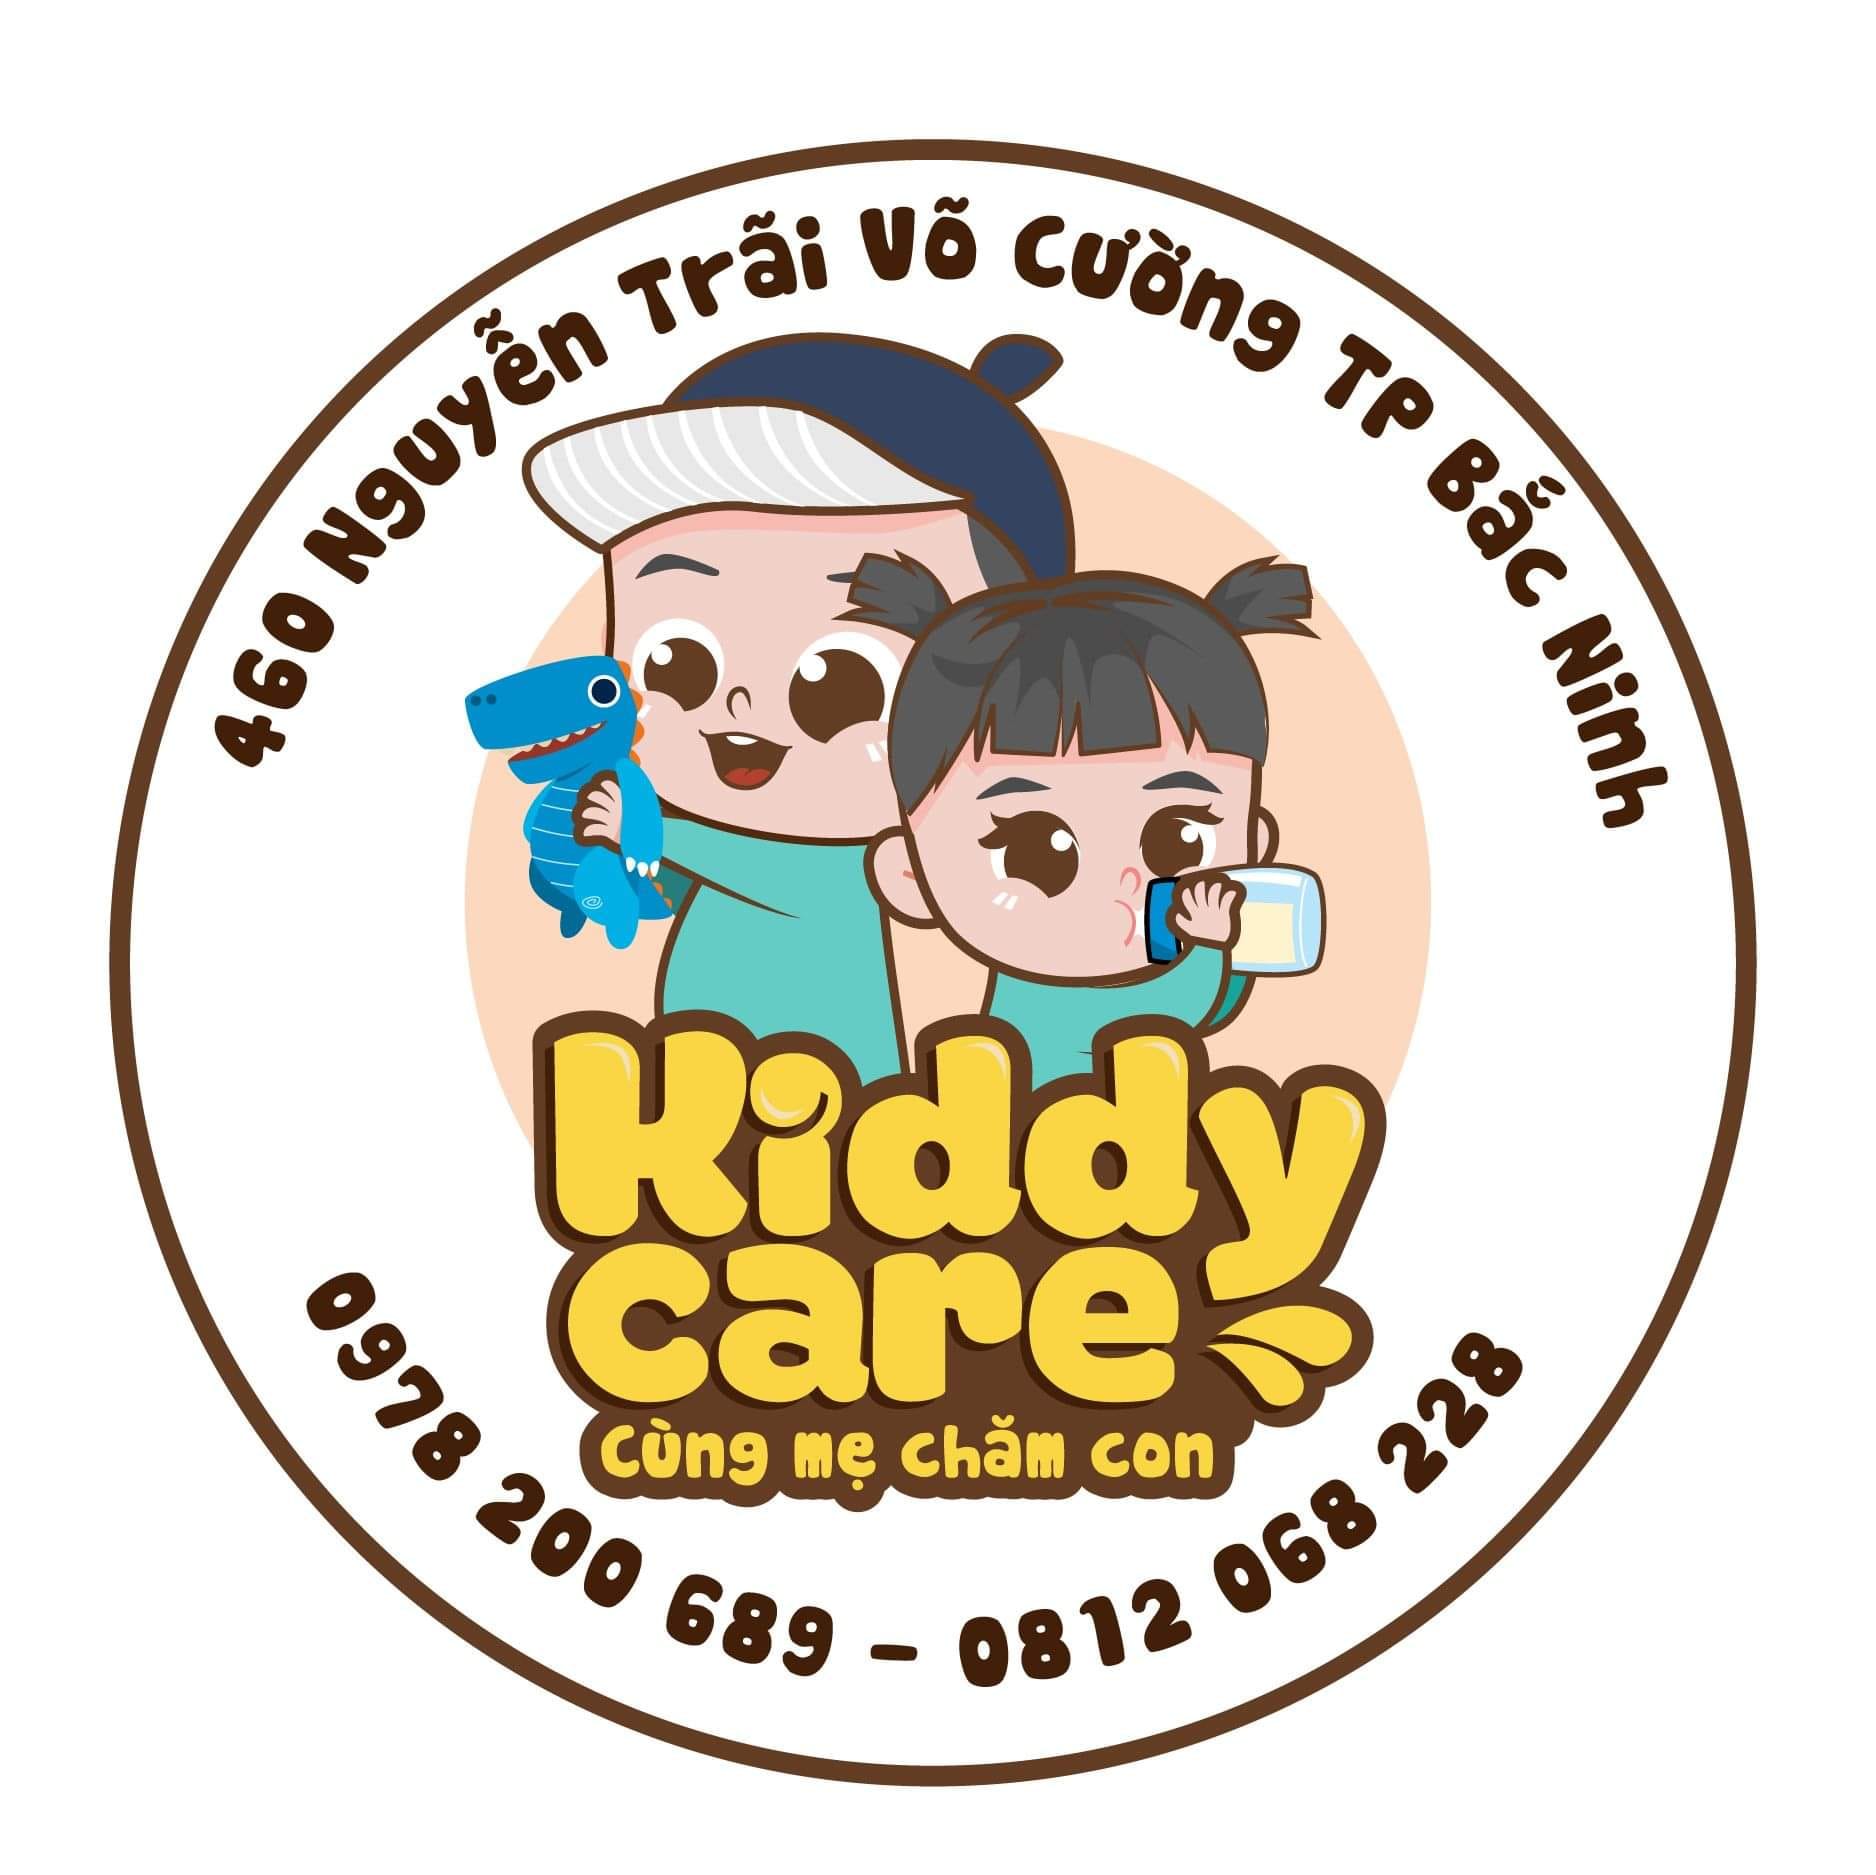 Kiddy Care 460 Nguyễn Trãi, Bồ Sơn, Võ Cường, tp Bắc Ninh 0812068228